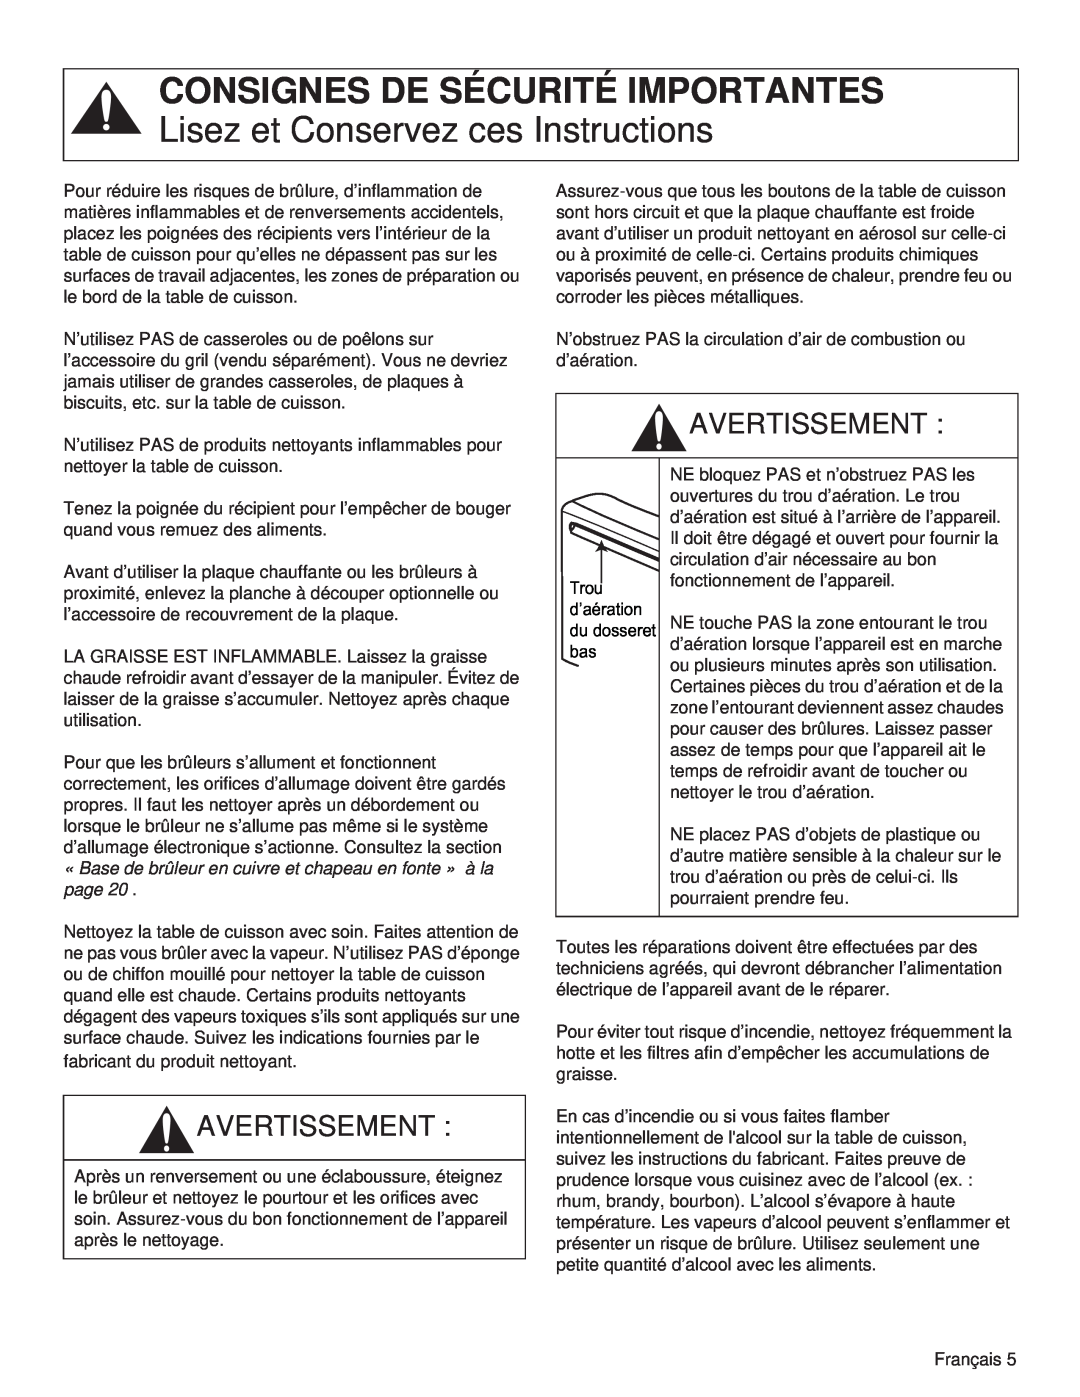 Thermador PCG48 Consignes De Sécurité Importantes, Lisez et Conservez ces Instructions, Avertissement, Trou, d’aération 